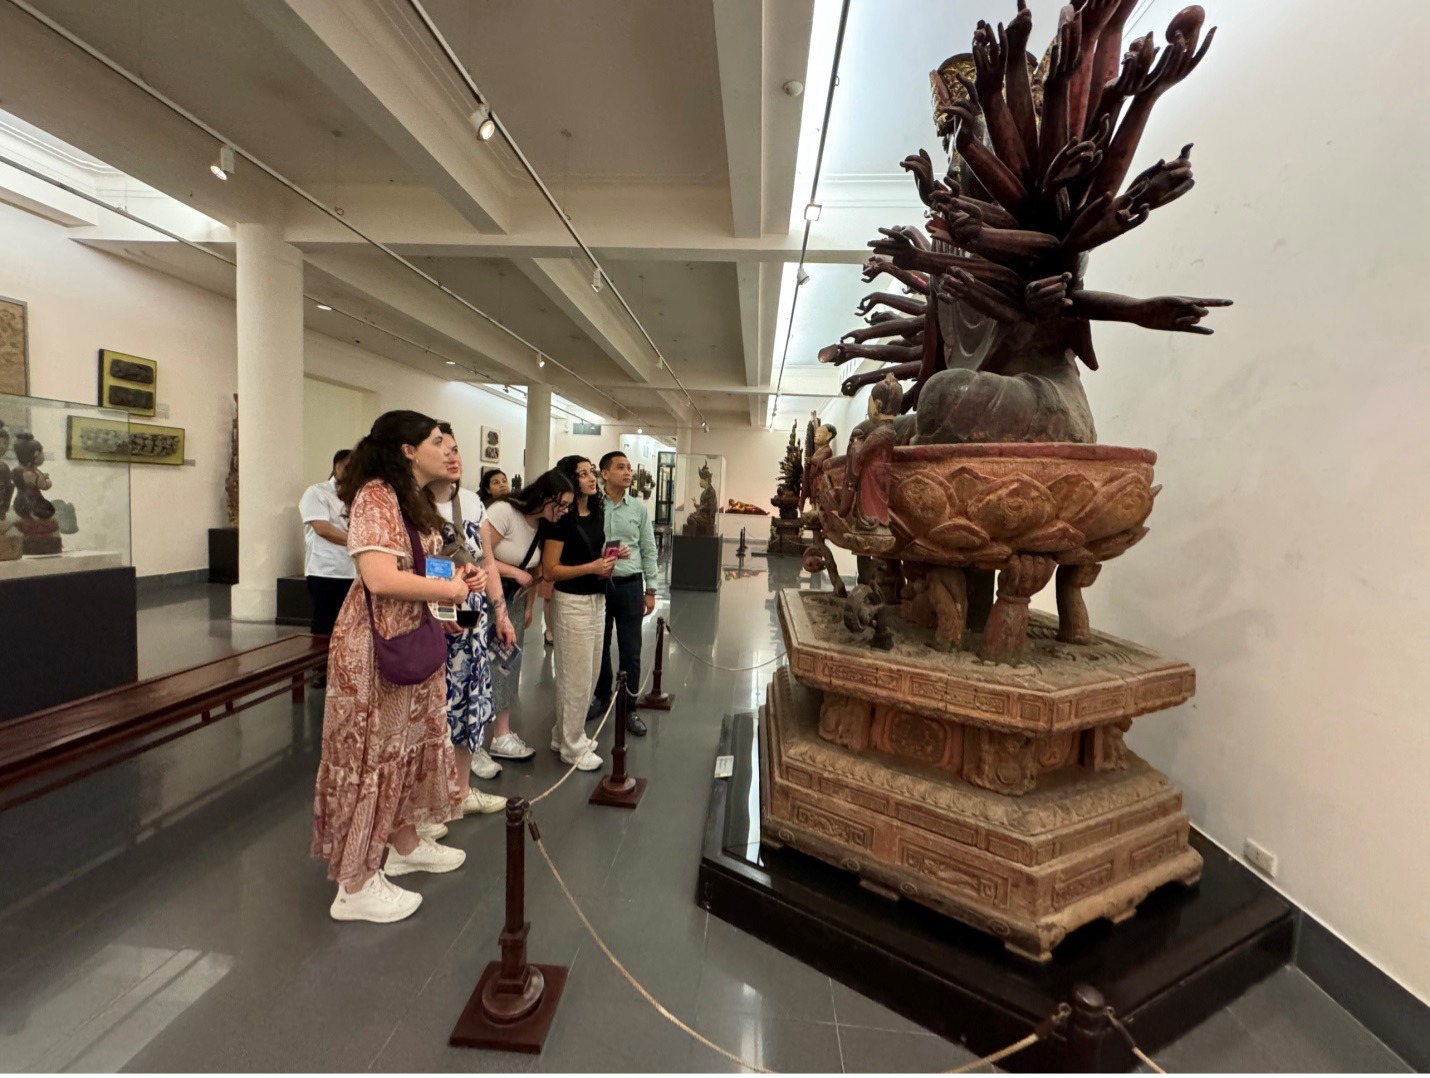 HIỆU TRƯỞNG TRƯỜNG ĐẠI HỌC NGOẠI THƯƠNG THĂM CHÍNH THỨC BẢO TÀNG MỸ THUẬT VIỆT NAM/The President of the Foreign Trade University officially visits the Vietnam Fine Arts Museum